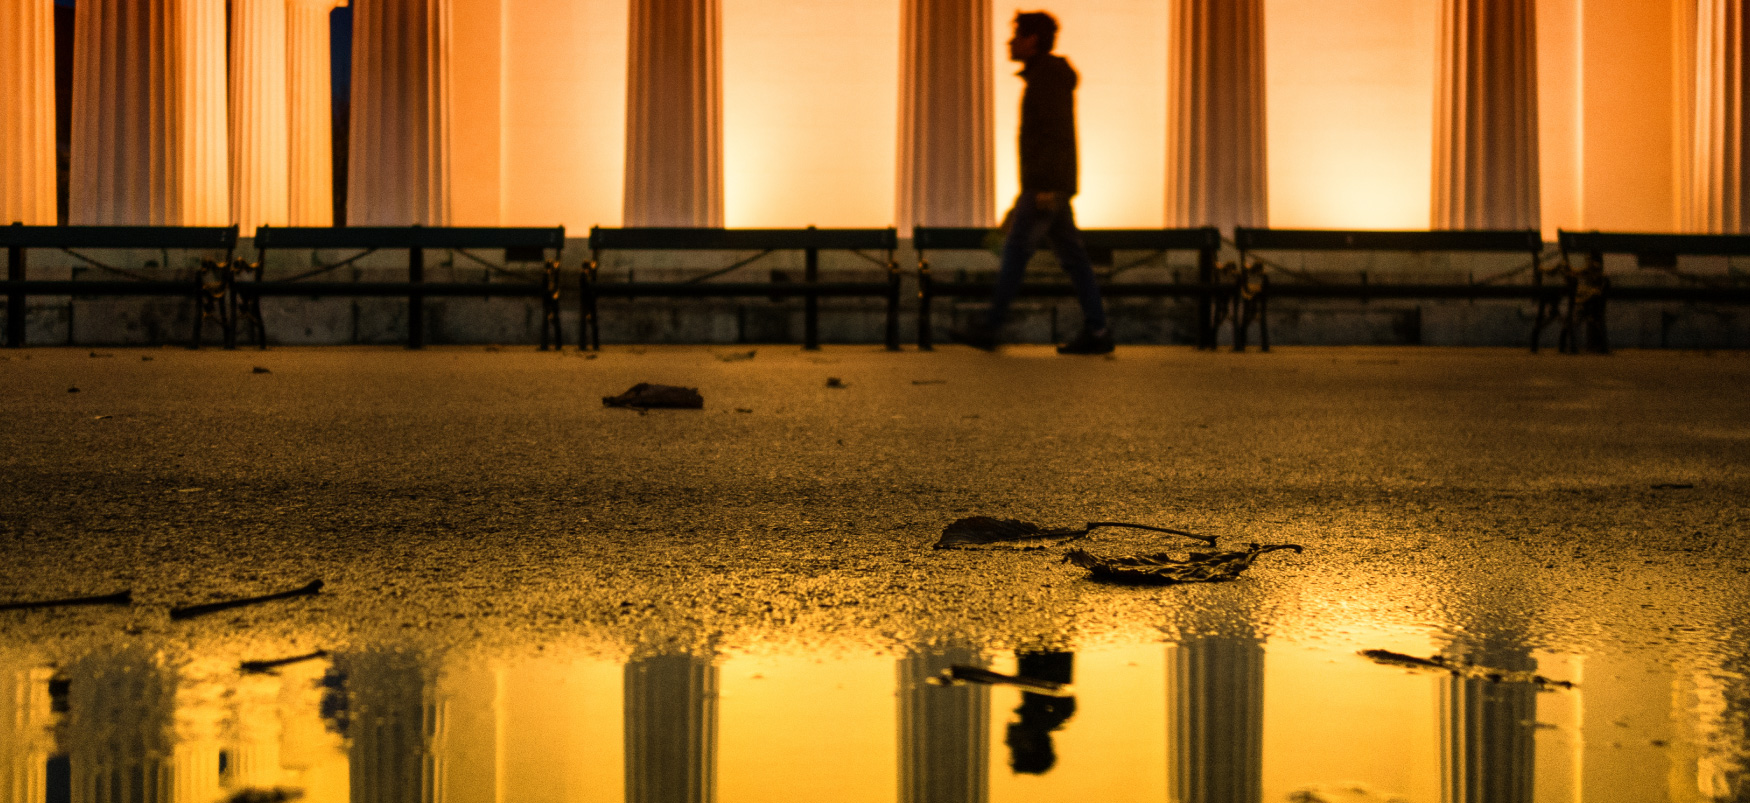 Une personne marchant devant un grand bâtiment bordé de colonnes en marbre. Le reflet de la personne est visible dans une flaque d'eau au premier plan.